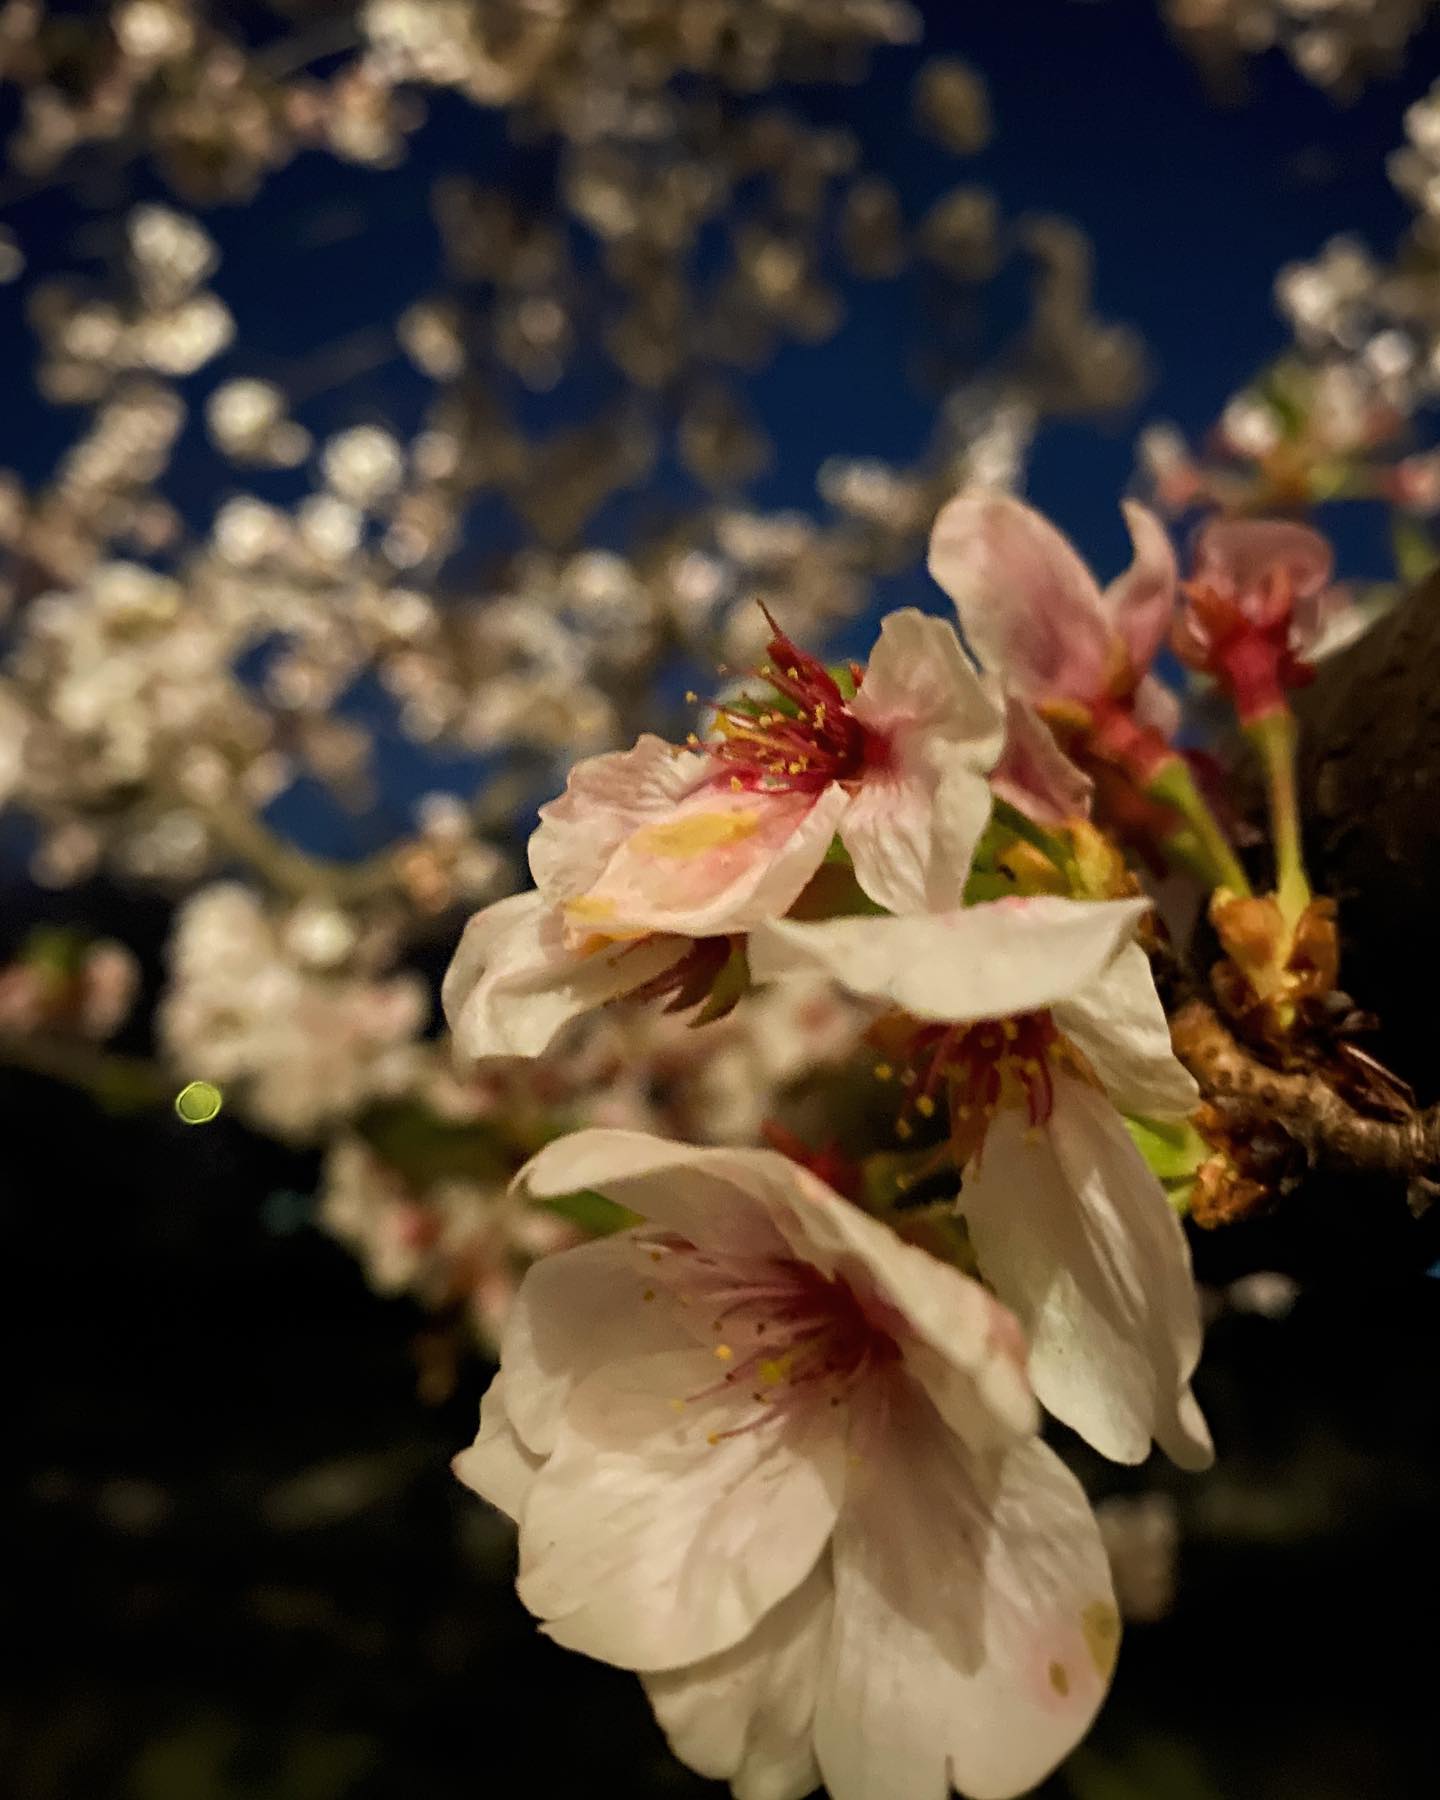 今日（20210401）の桜。@石手川緑地公園街灯に照らされた夜桜を、ナイトモードで長時間露光。散り始めた花弁もいとおかし。土曜日まで楽しめそうで良かったねぇ。#桜 #サクラ #夜桜 #夜桜ライトアップ #松山市 #石手川公園 #ナイトモード #iphone11